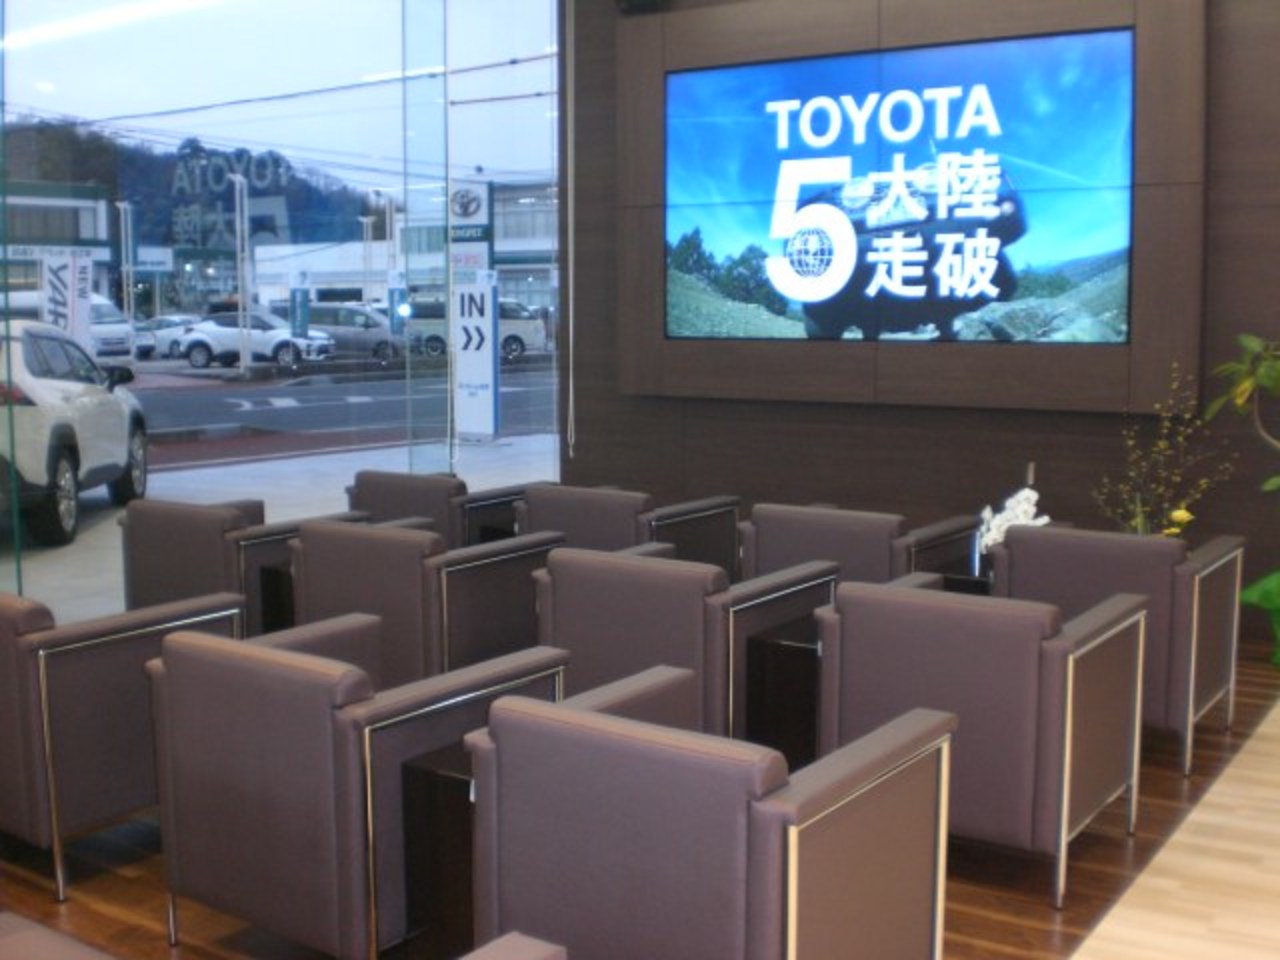 松江店 グランドオープン ネッツトヨタ島根株式会社 もっと良いカーライフを提供致します